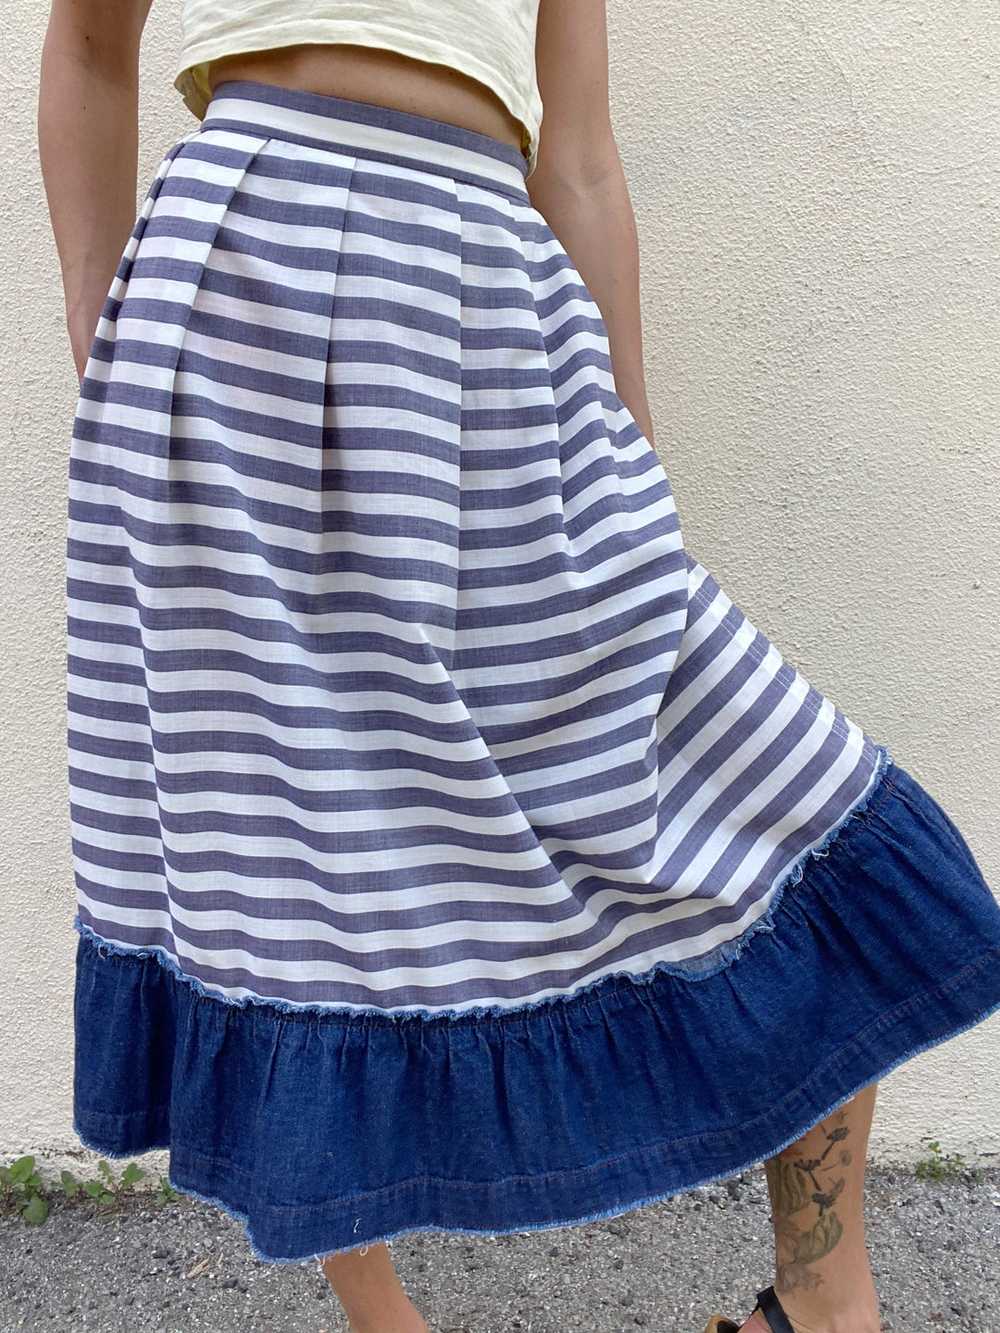 Comme De Garcons Striped Cotton Skirt - image 5